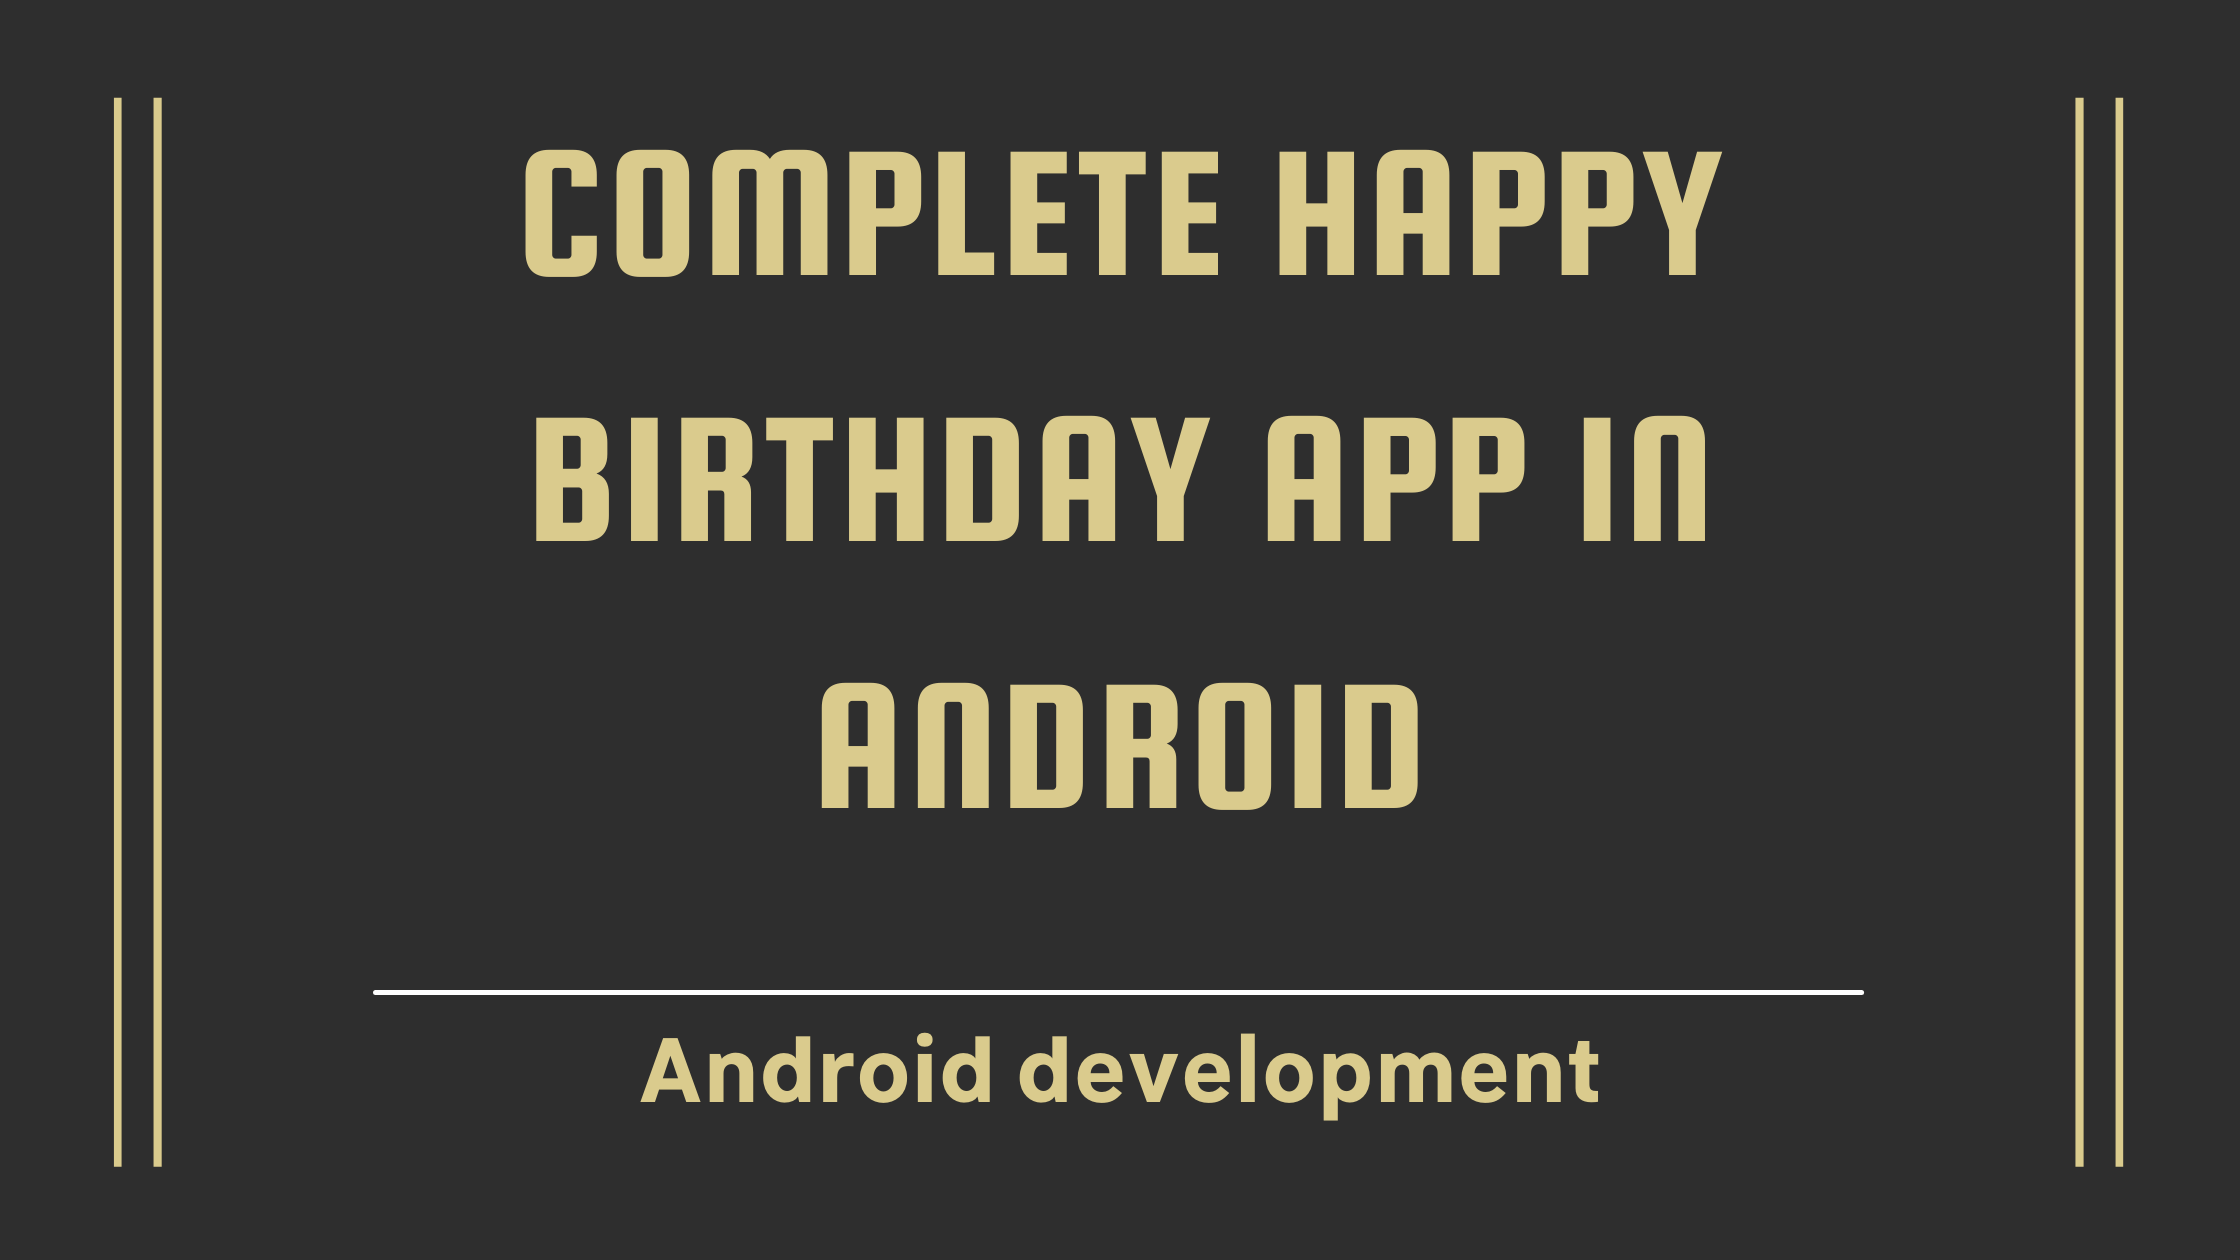 Happy birthday app